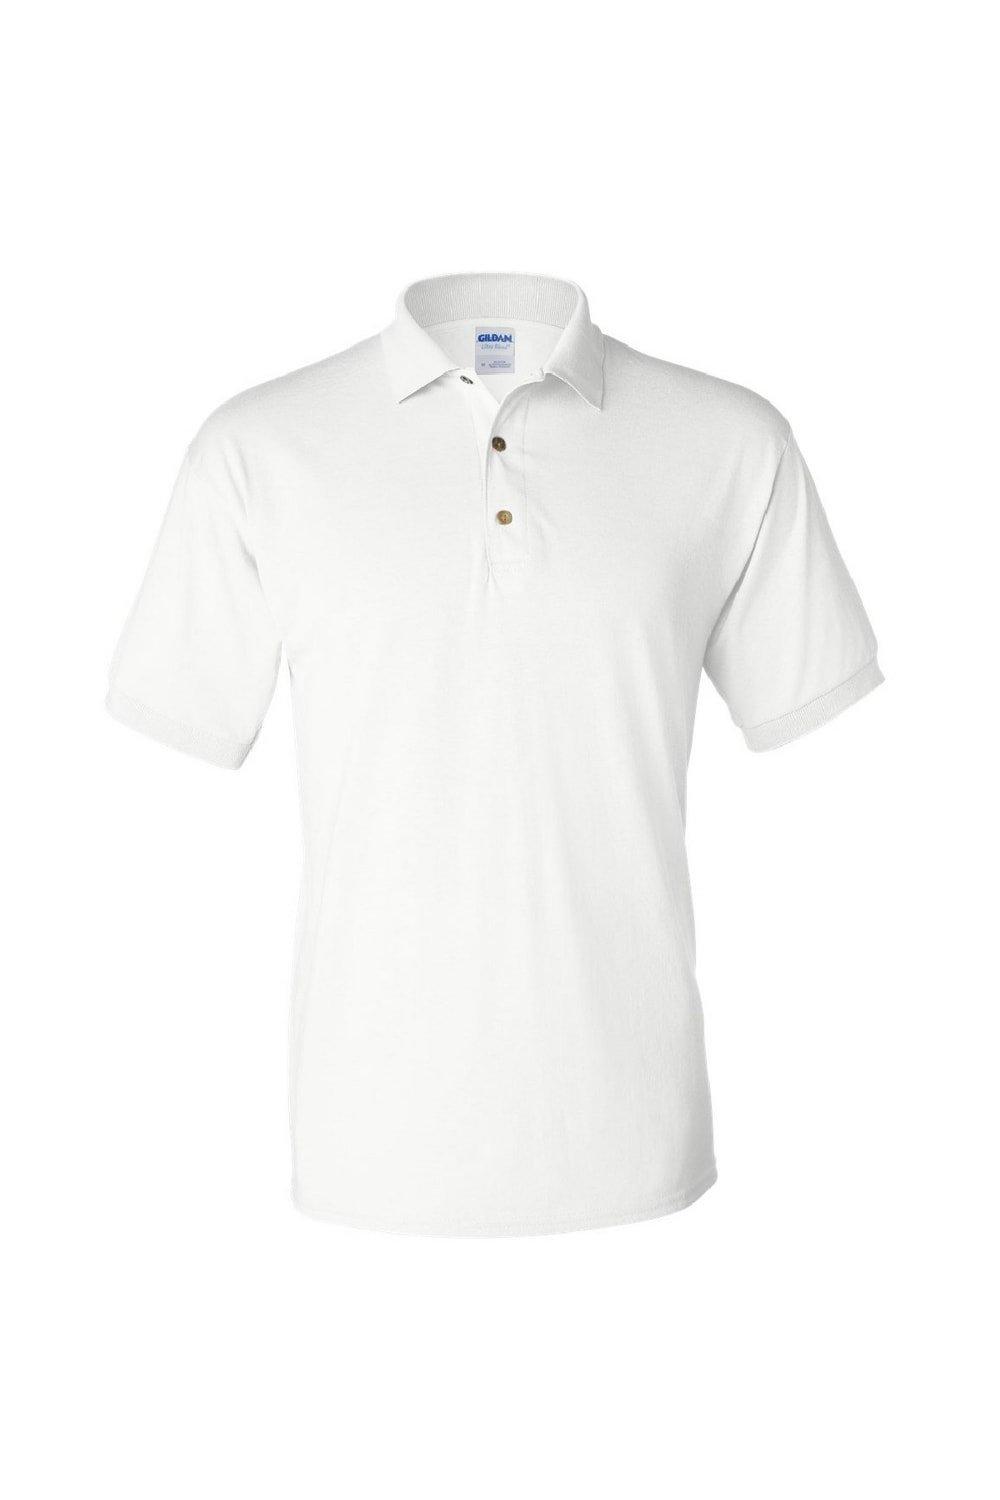 Рубашка поло из джерси DryBlend для взрослых с короткими рукавами Gildan, белый